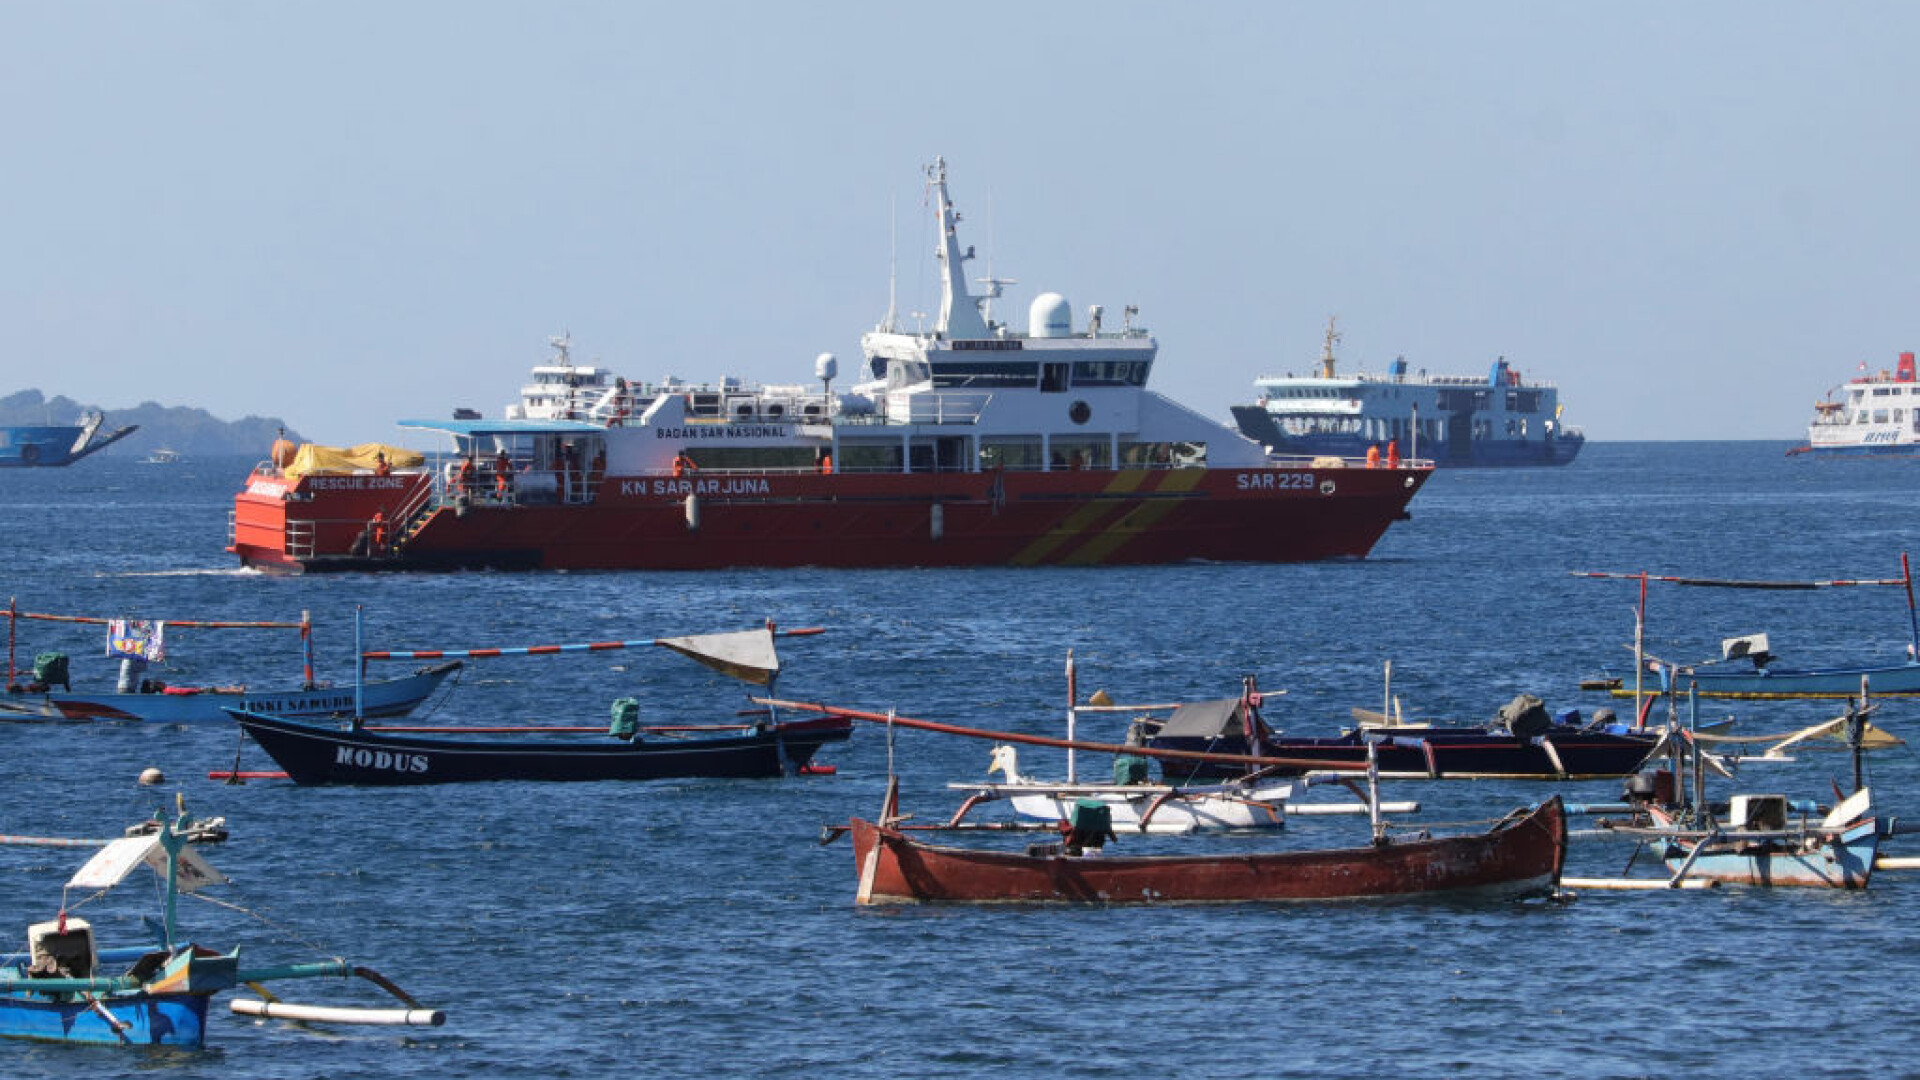 Submarinul militar dispărut în Bali a fost găsit rupt în bucăți. Toţi cei 53 de membri ai echipajului au murit